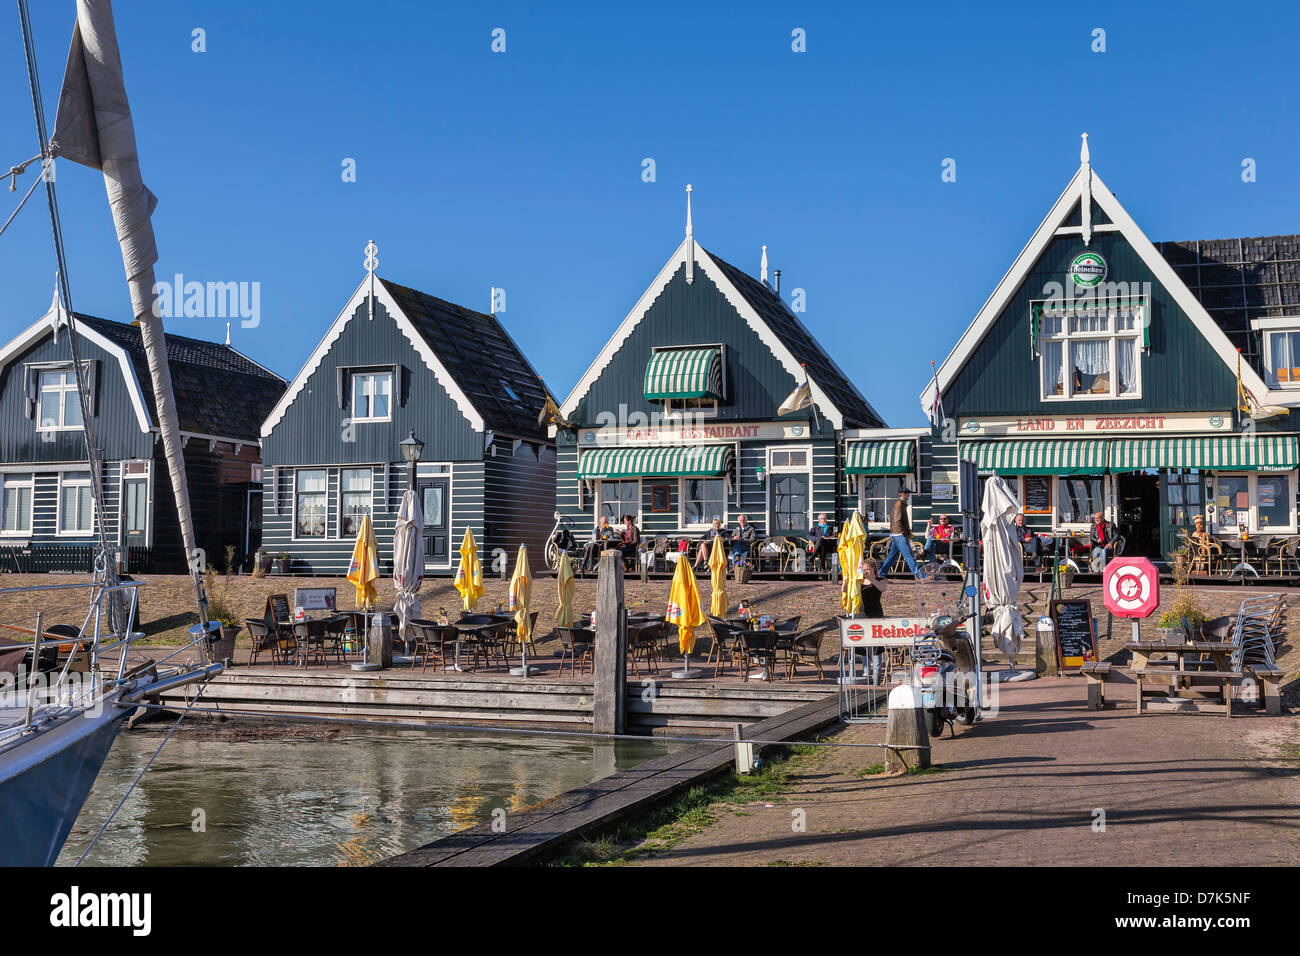 Marken, Waterland, Nordholland, Niederlande Stockfoto